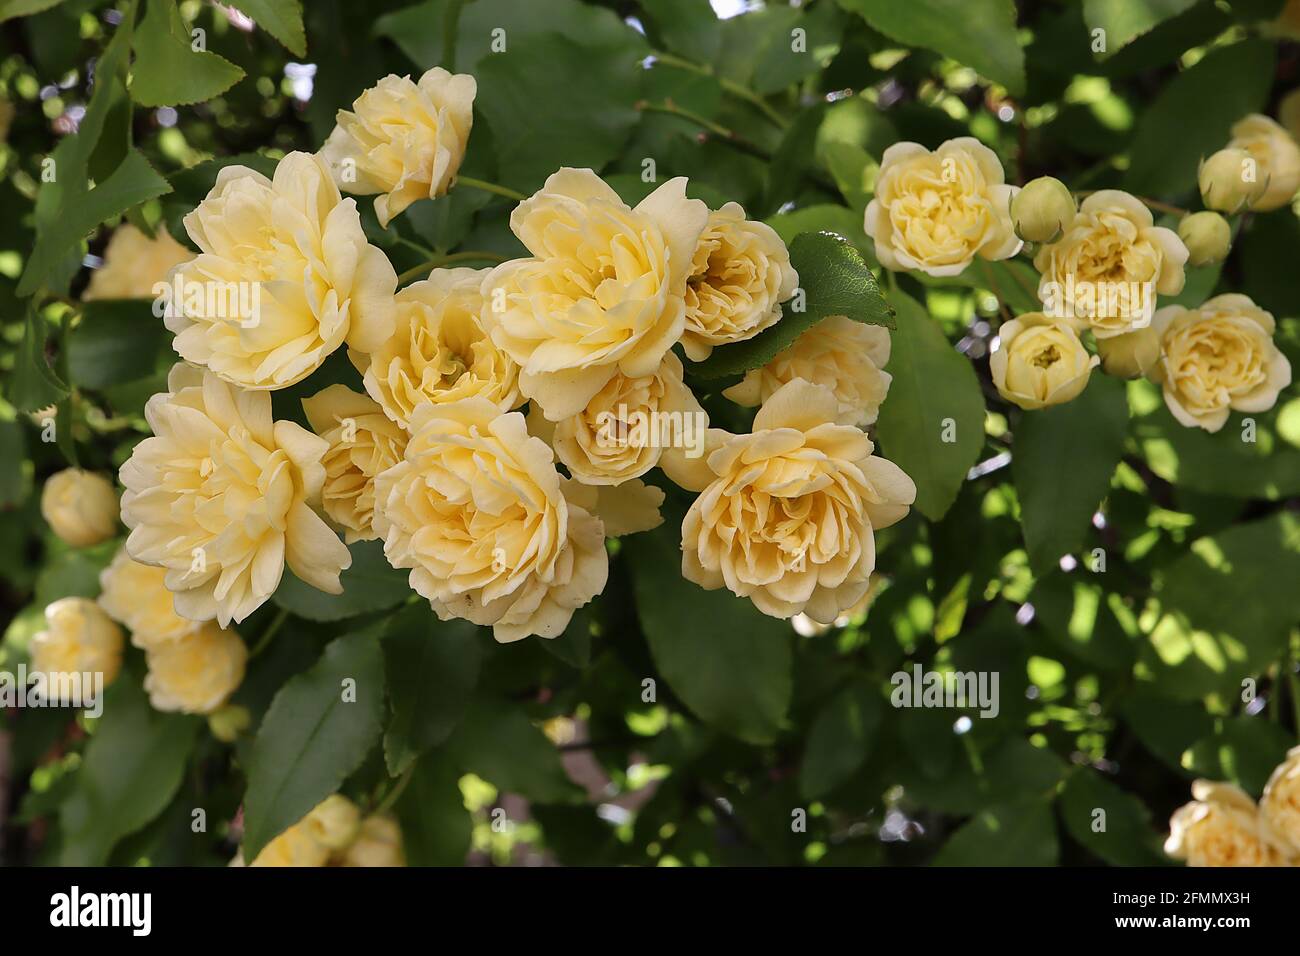 Rosa banksiae ‘Lutea’ zweifache gelbe Banksia Rose – Kaskade von gelben Rosetten-ähnlichen Blüten, Mai, England, Großbritannien Stockfoto